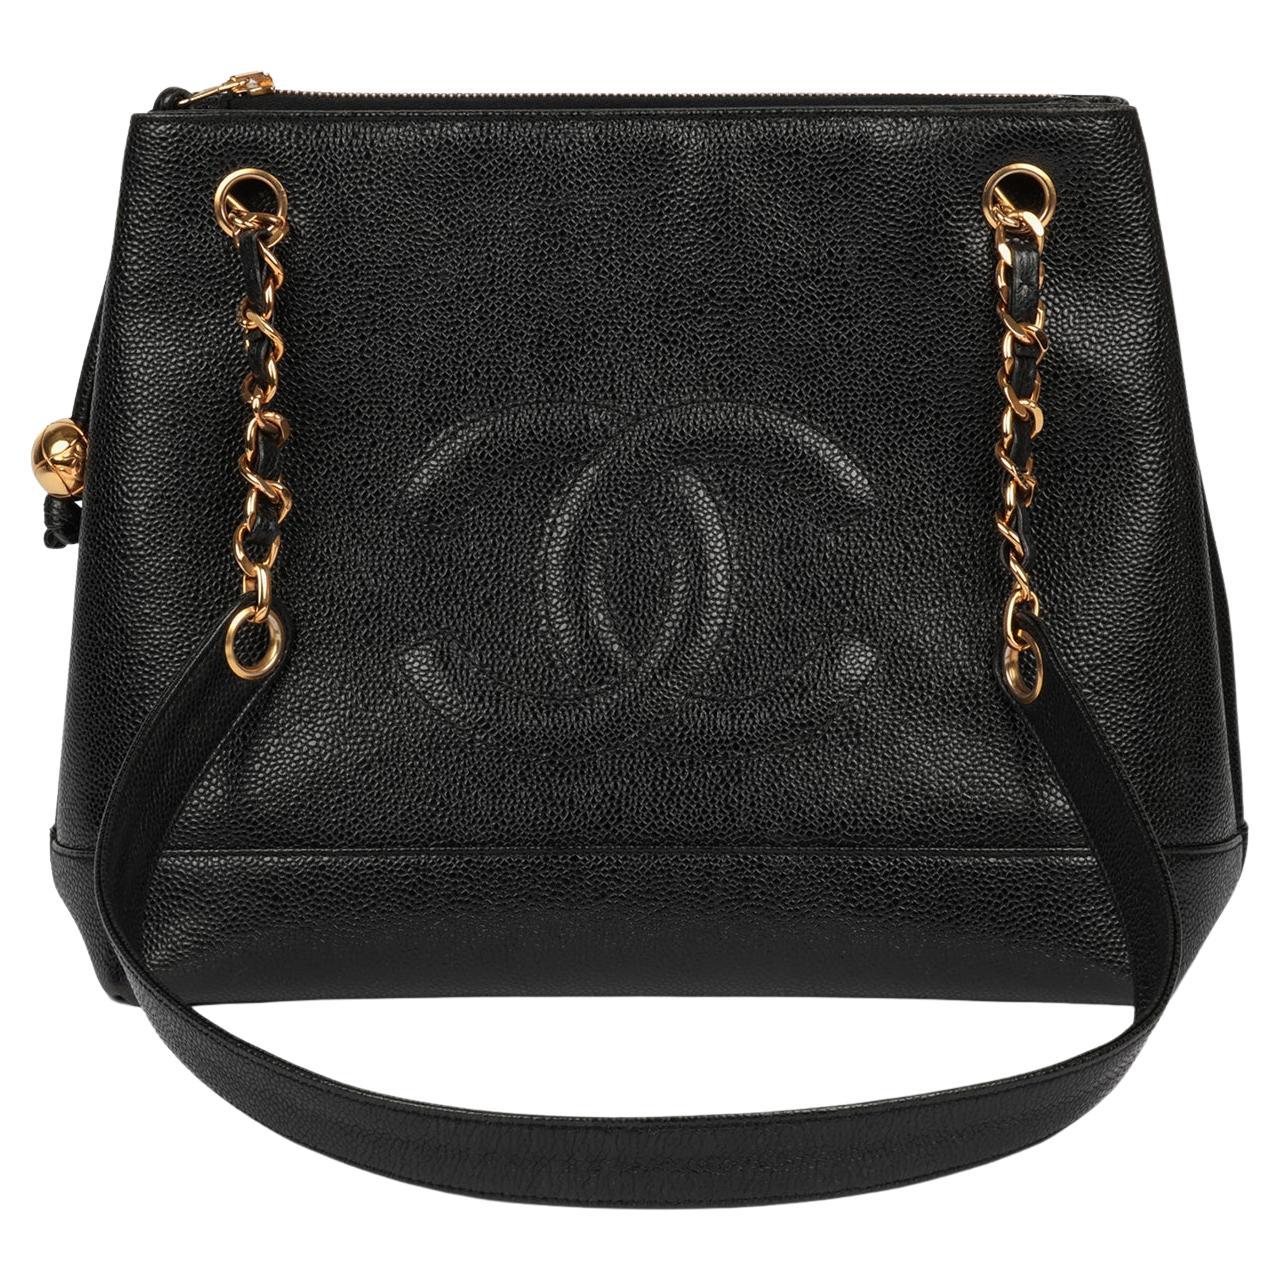 Chanel Black Caviar Leather Vintage Timeless Shoulder Bag For Sale